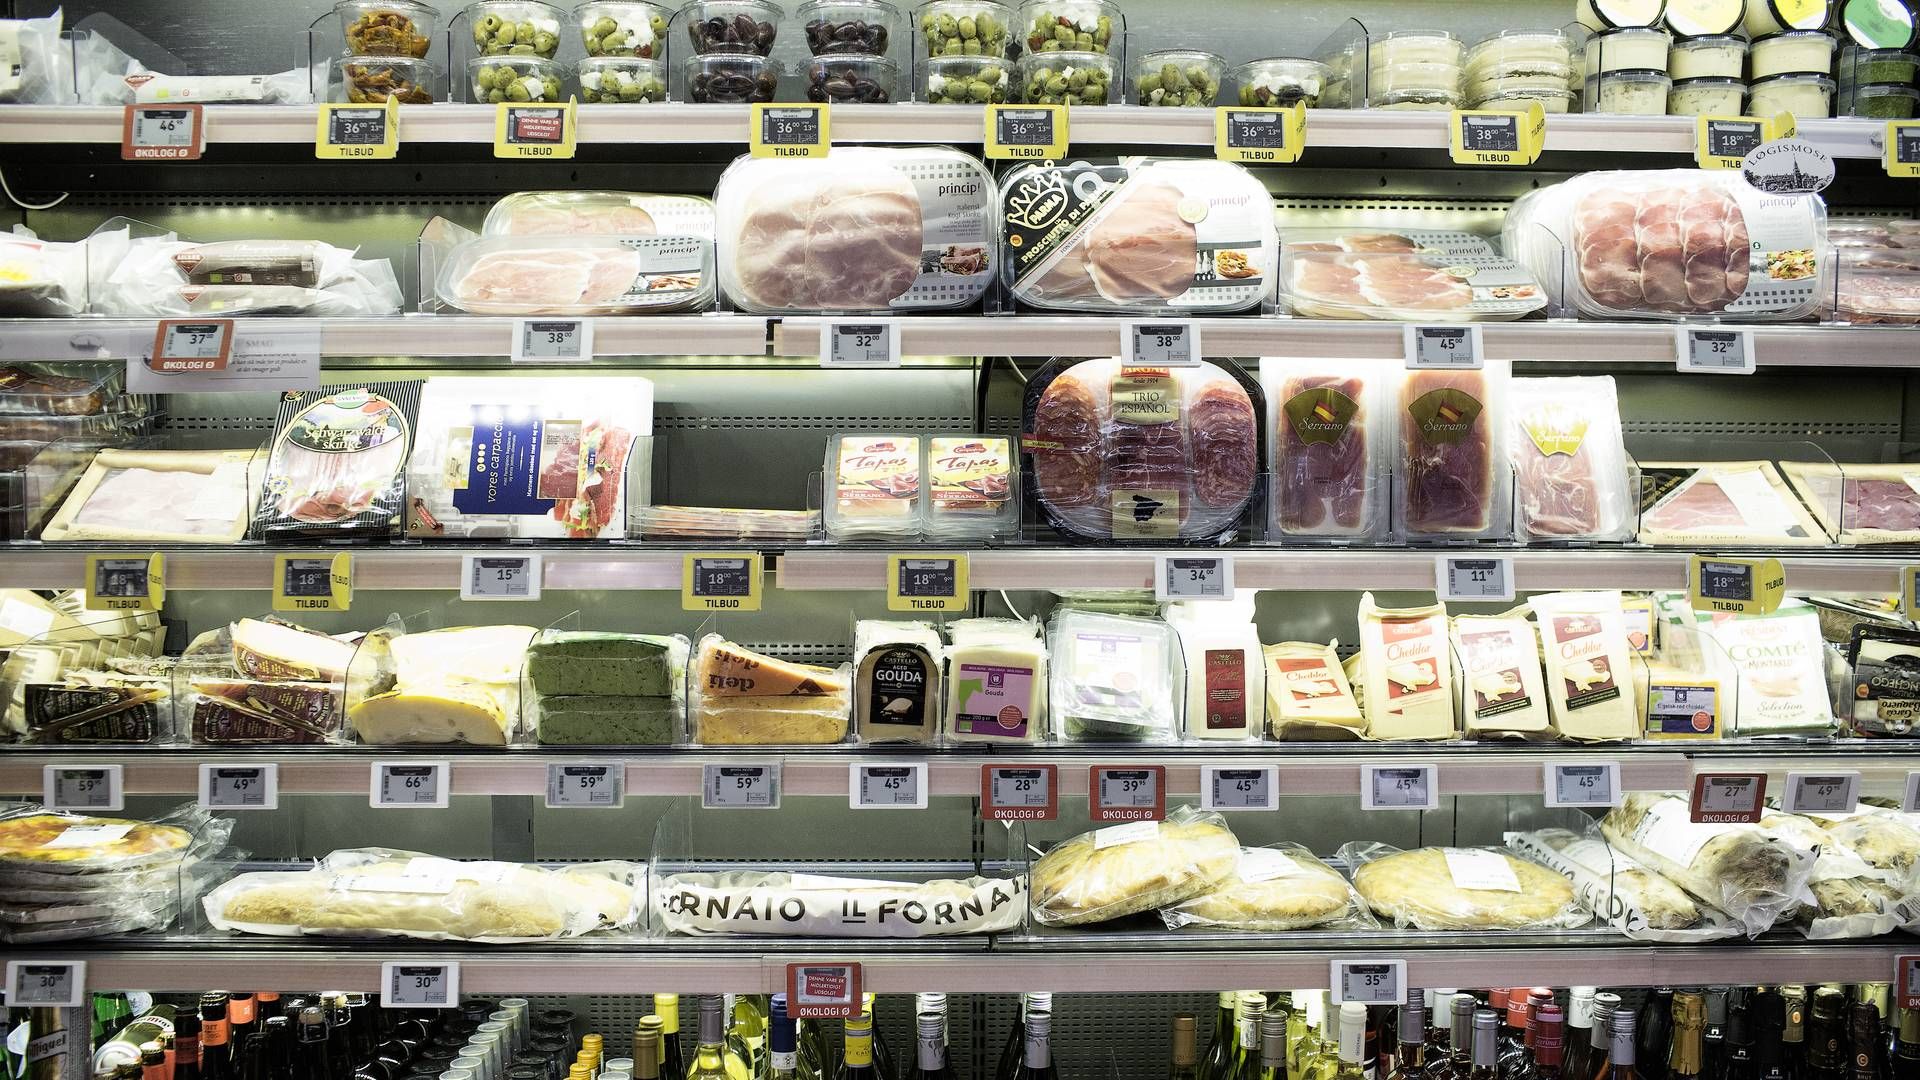 Forbrugerne går mere på kompromis med kvaliteten af madvarerne for at spare penge. viser undersøgelse. | Foto: Jens Henrik Daugaard/ERH